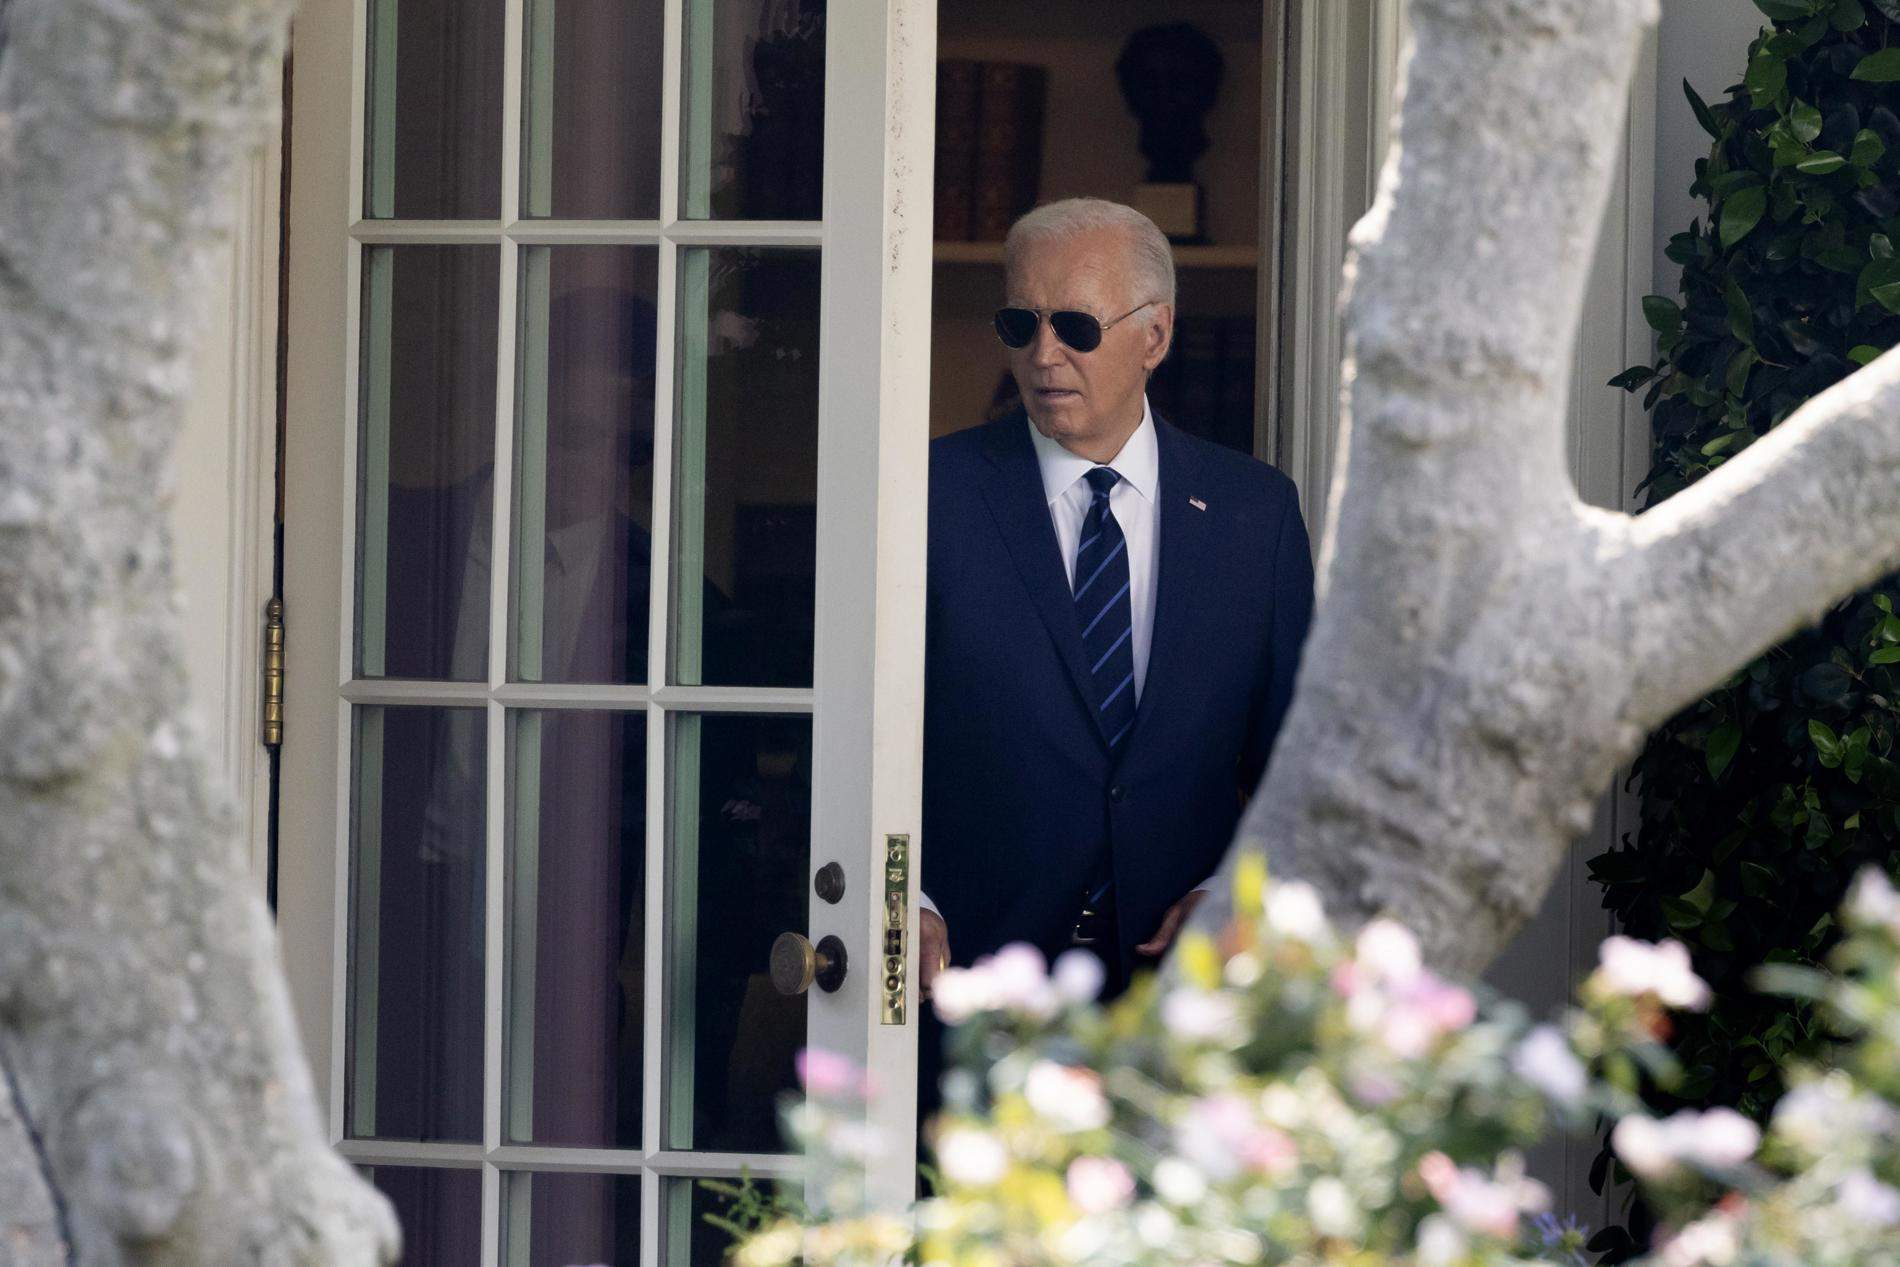 Biden admet que va ser desafortunat amb l'expressió de “posar Trump a la diana”